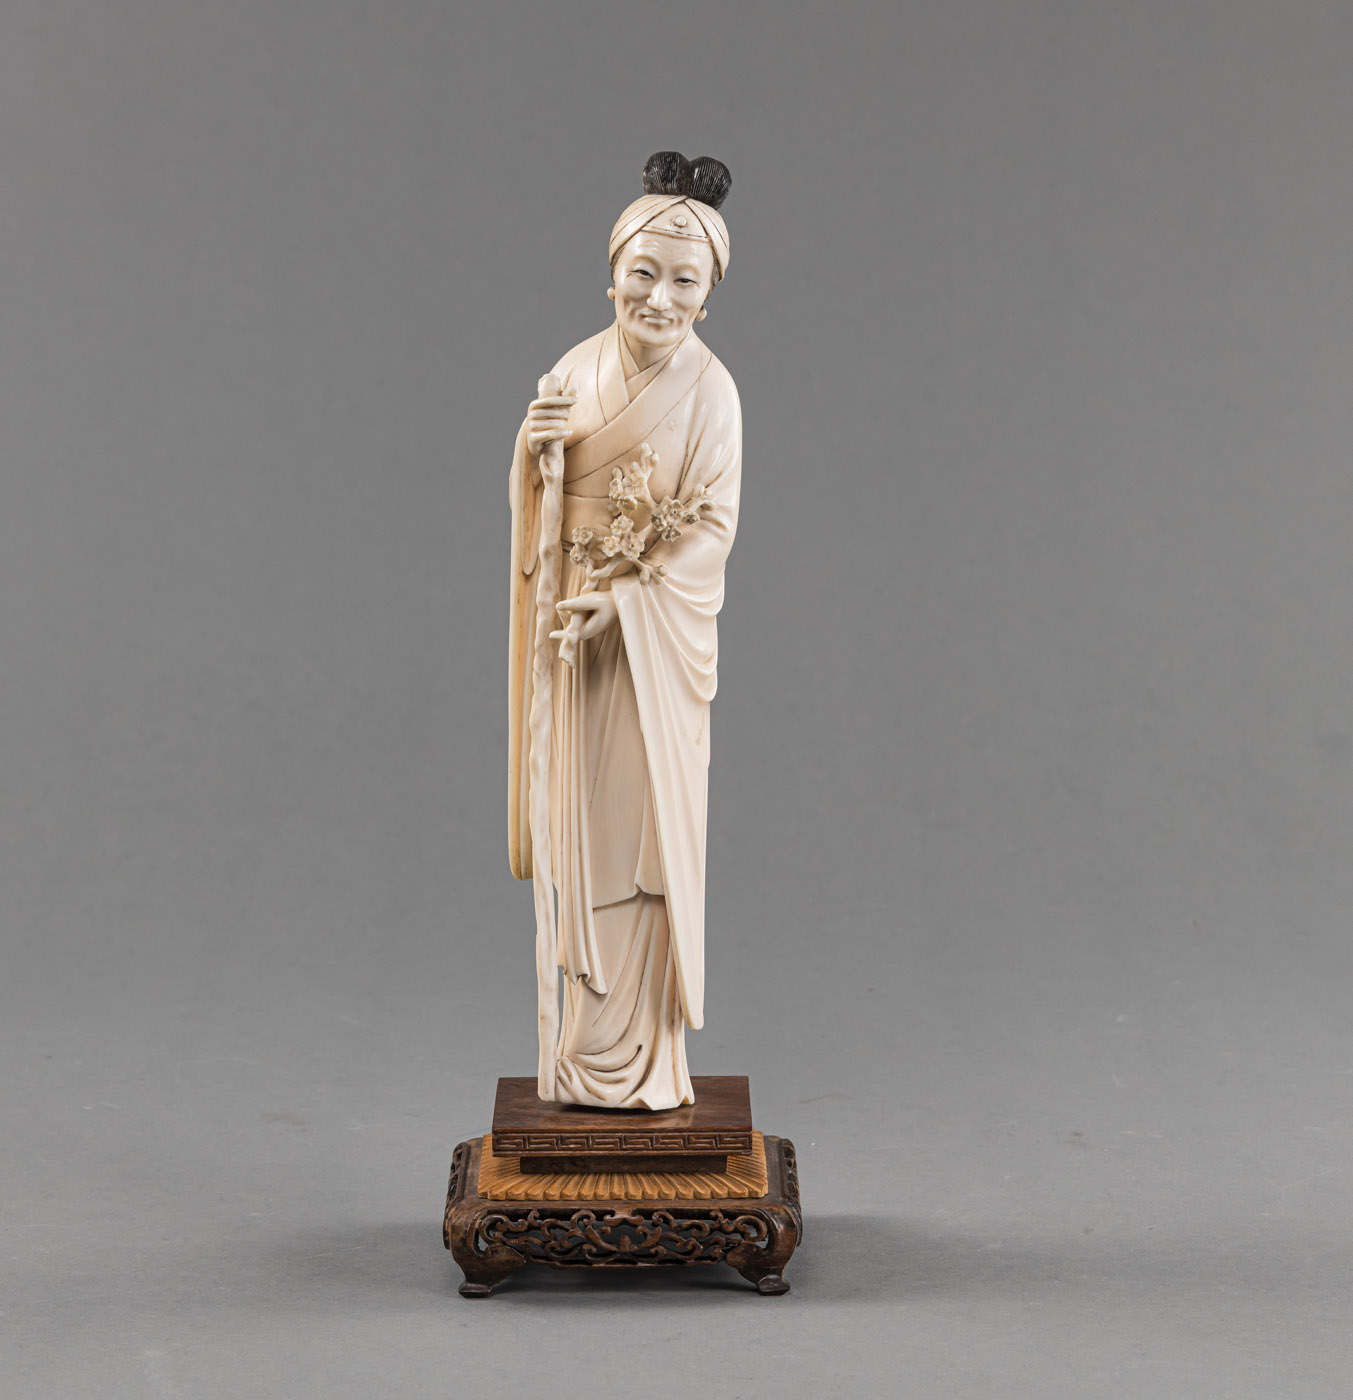 <b>Stehende Elfenbein-Figur einer älteren Dame in langem Gewand mit Gehstock und Pflaumenblütenzweig, montiert auf geschnitztem Holzsockel</b>